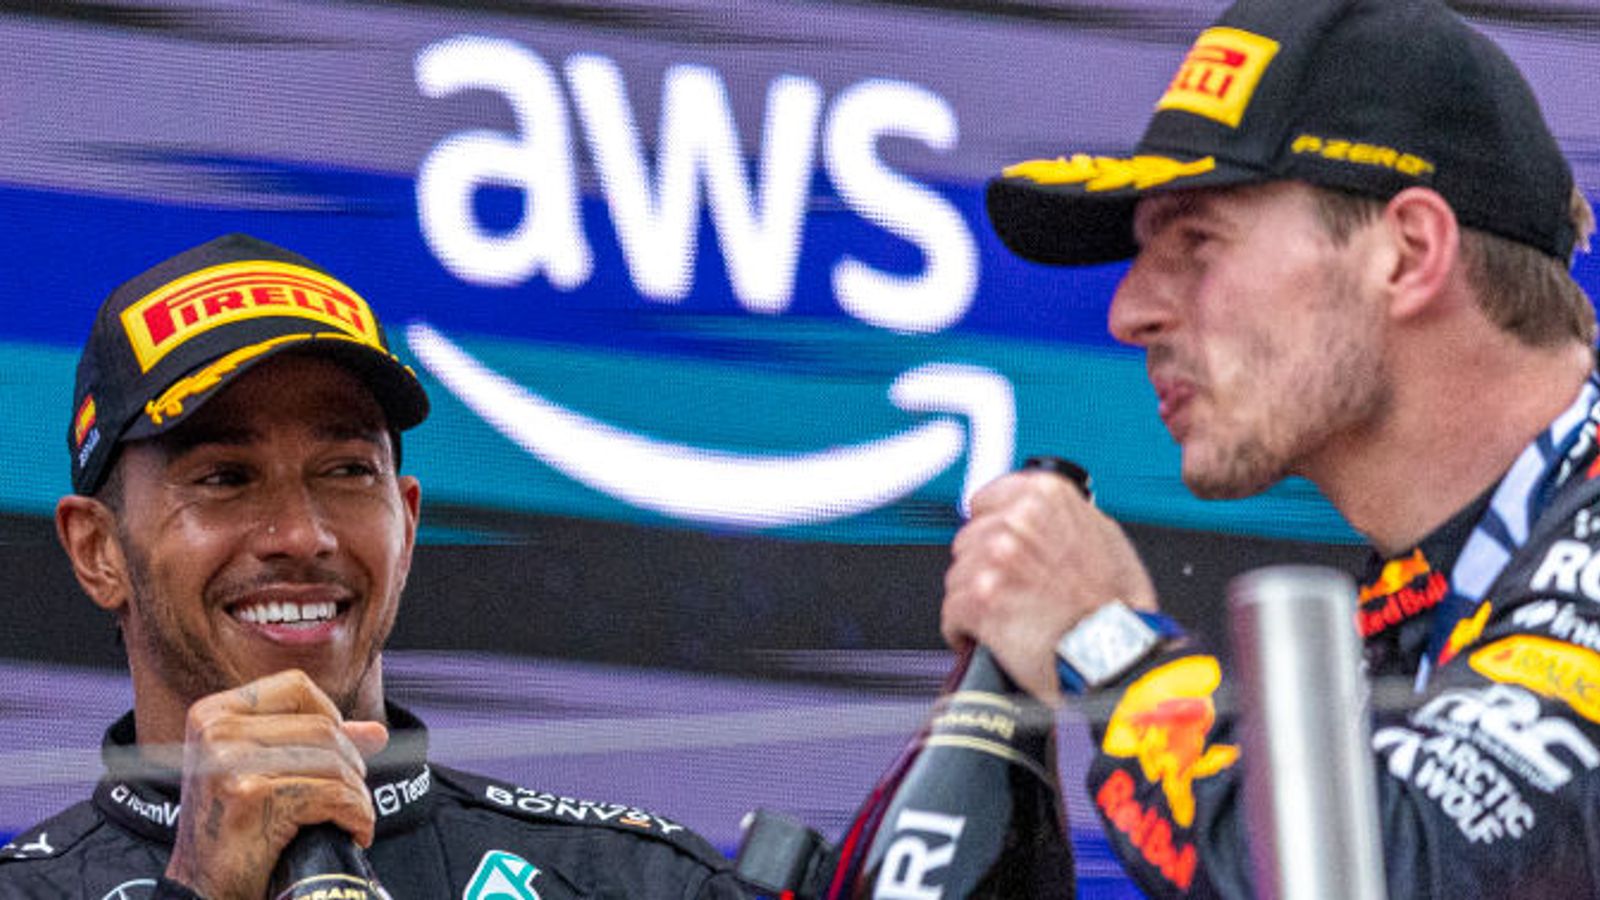 Martin Brundle repasa el Gran Premio de España tras la victoria de Max Verstappen y el regreso de Mercedes |  Noticias F1